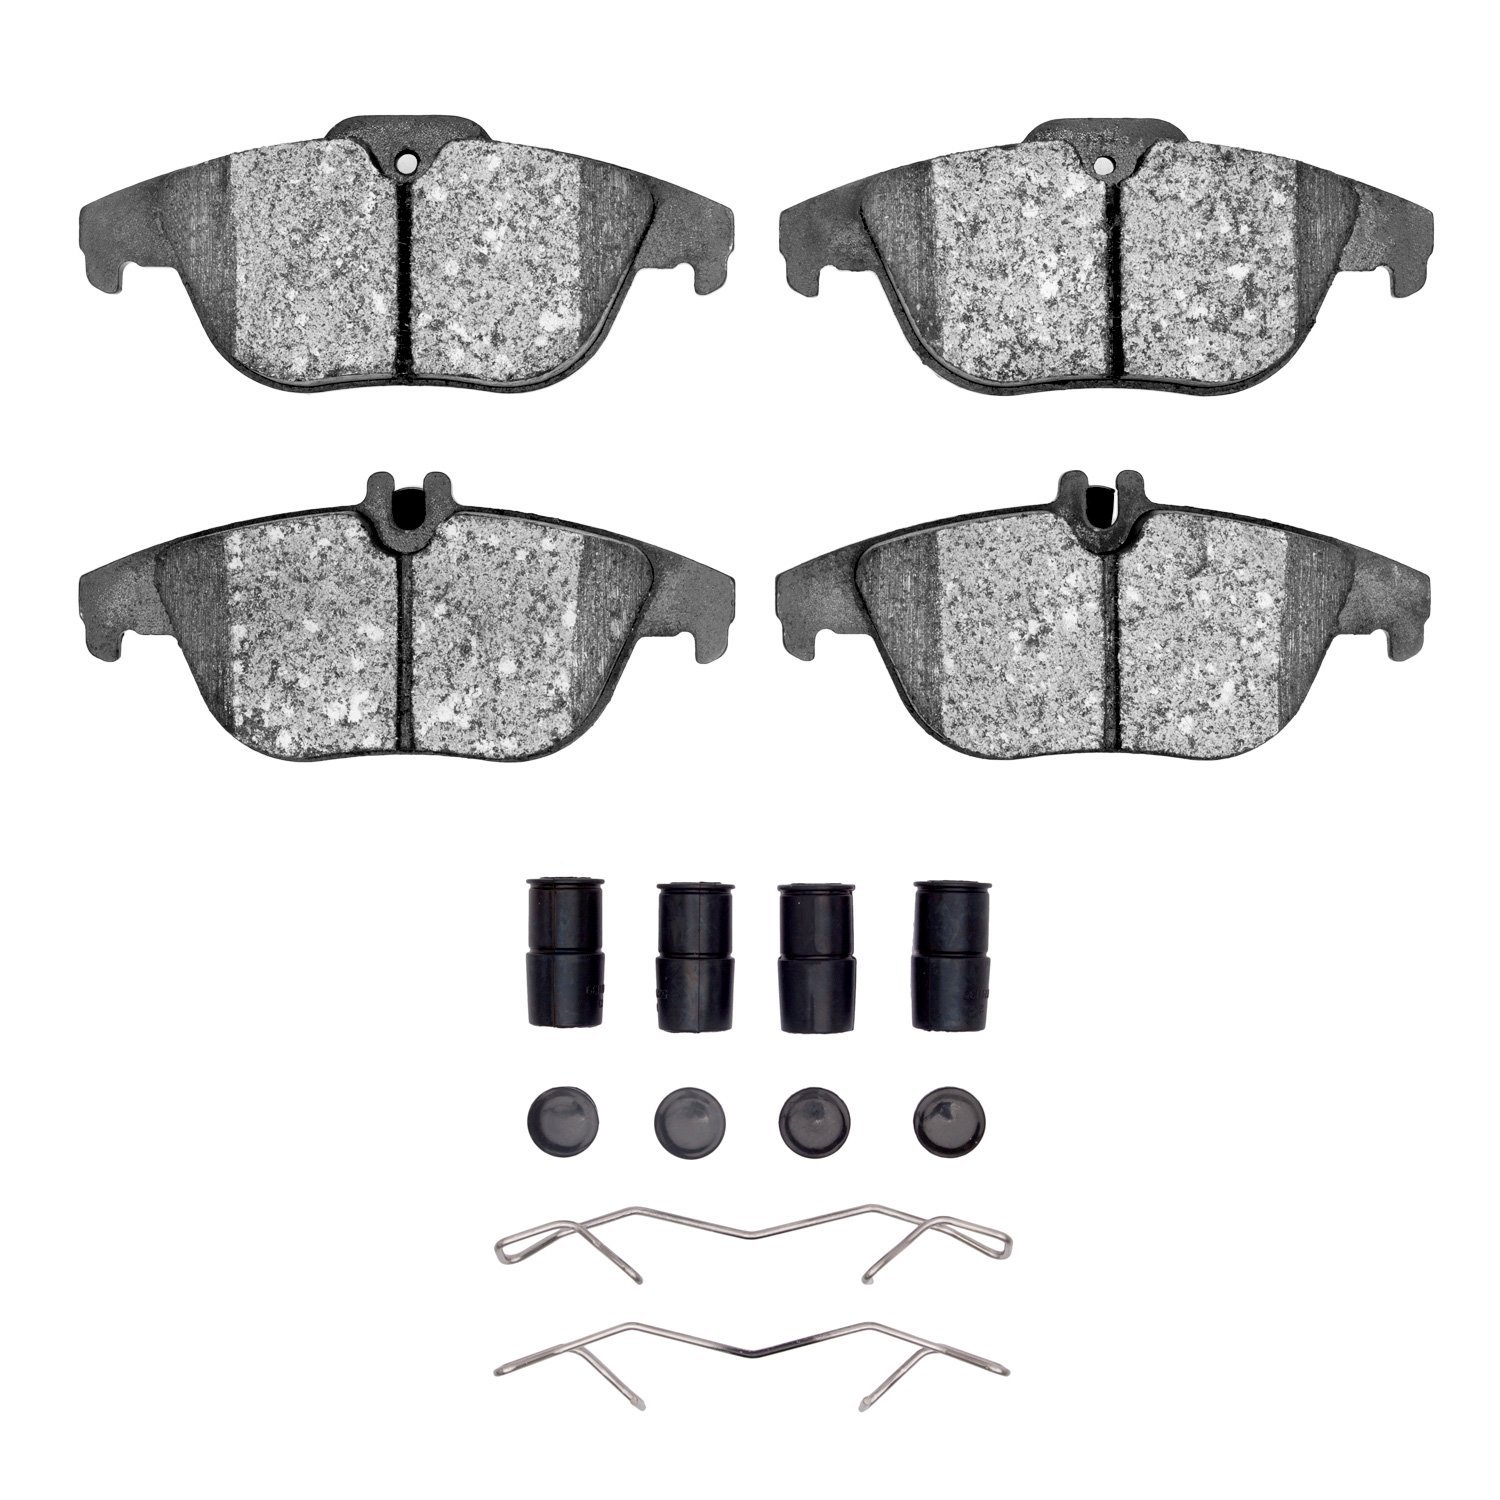 1311-1341-11 3000-Series Semi-Metallic Brake Pads & Hardware Kit, 2009-2015 Mercedes-Benz, Position: Rear